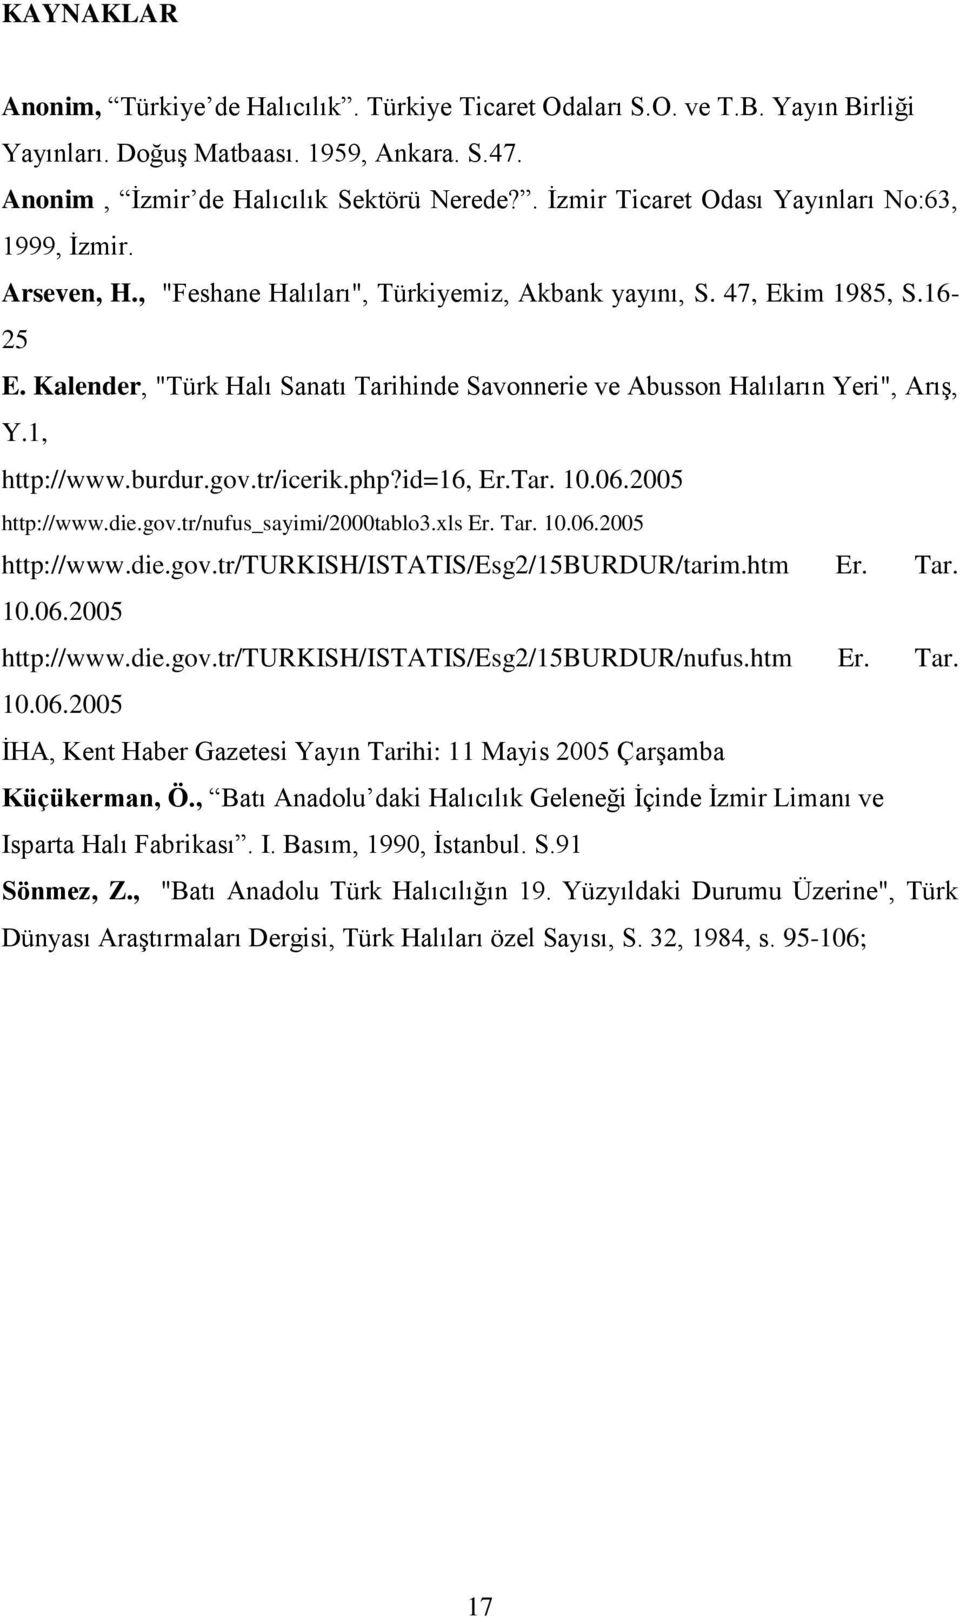 Kalender, "Türk Halı Sanatı Tarihinde Savonnerie ve Abusson Halıların Yeri", Arış, Y.1, S.3, http://www.burdur.gov.tr/icerik.php?id=16, Er.Tar. 10.06.2005 http://www.die.gov.tr/nufus_sayimi/2000tablo3.